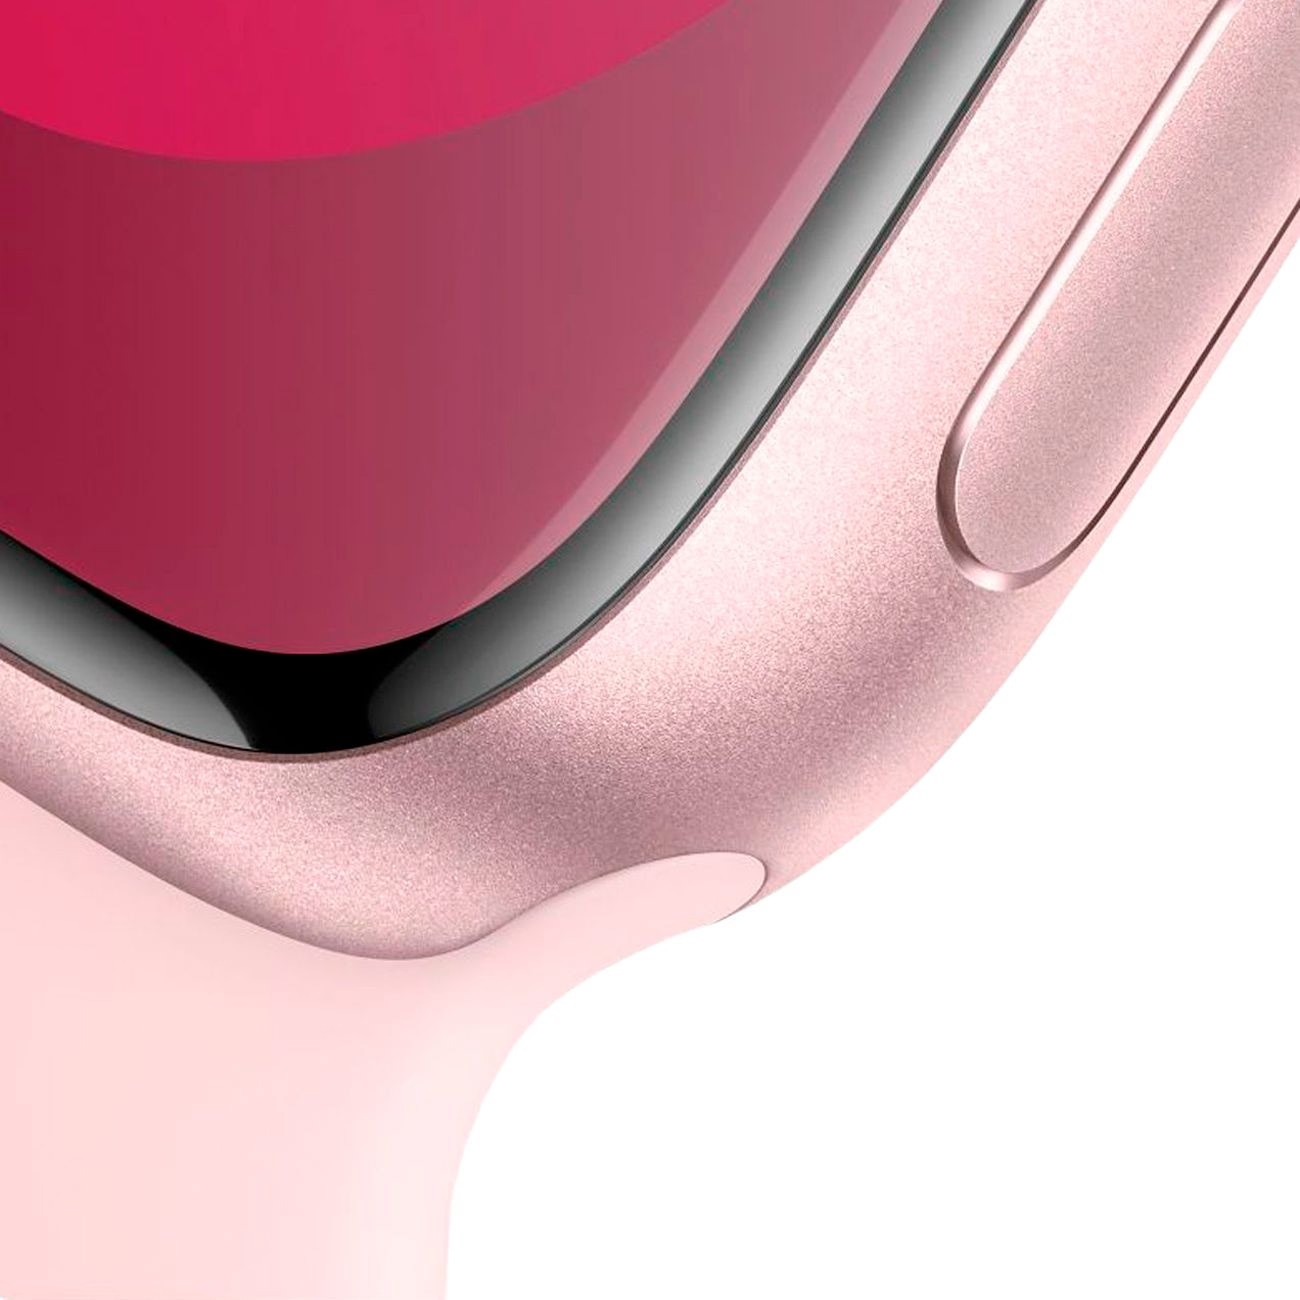 Купить смарт-часы apple watch s9 41mm pink aluminium Apple Watch 9 в официальном магазине Apple, Samsung, Xiaomi. iPixel.ru Купить, заказ, кредит, рассрочка, отзывы,  характеристики, цена,  фотографии, в подарок.